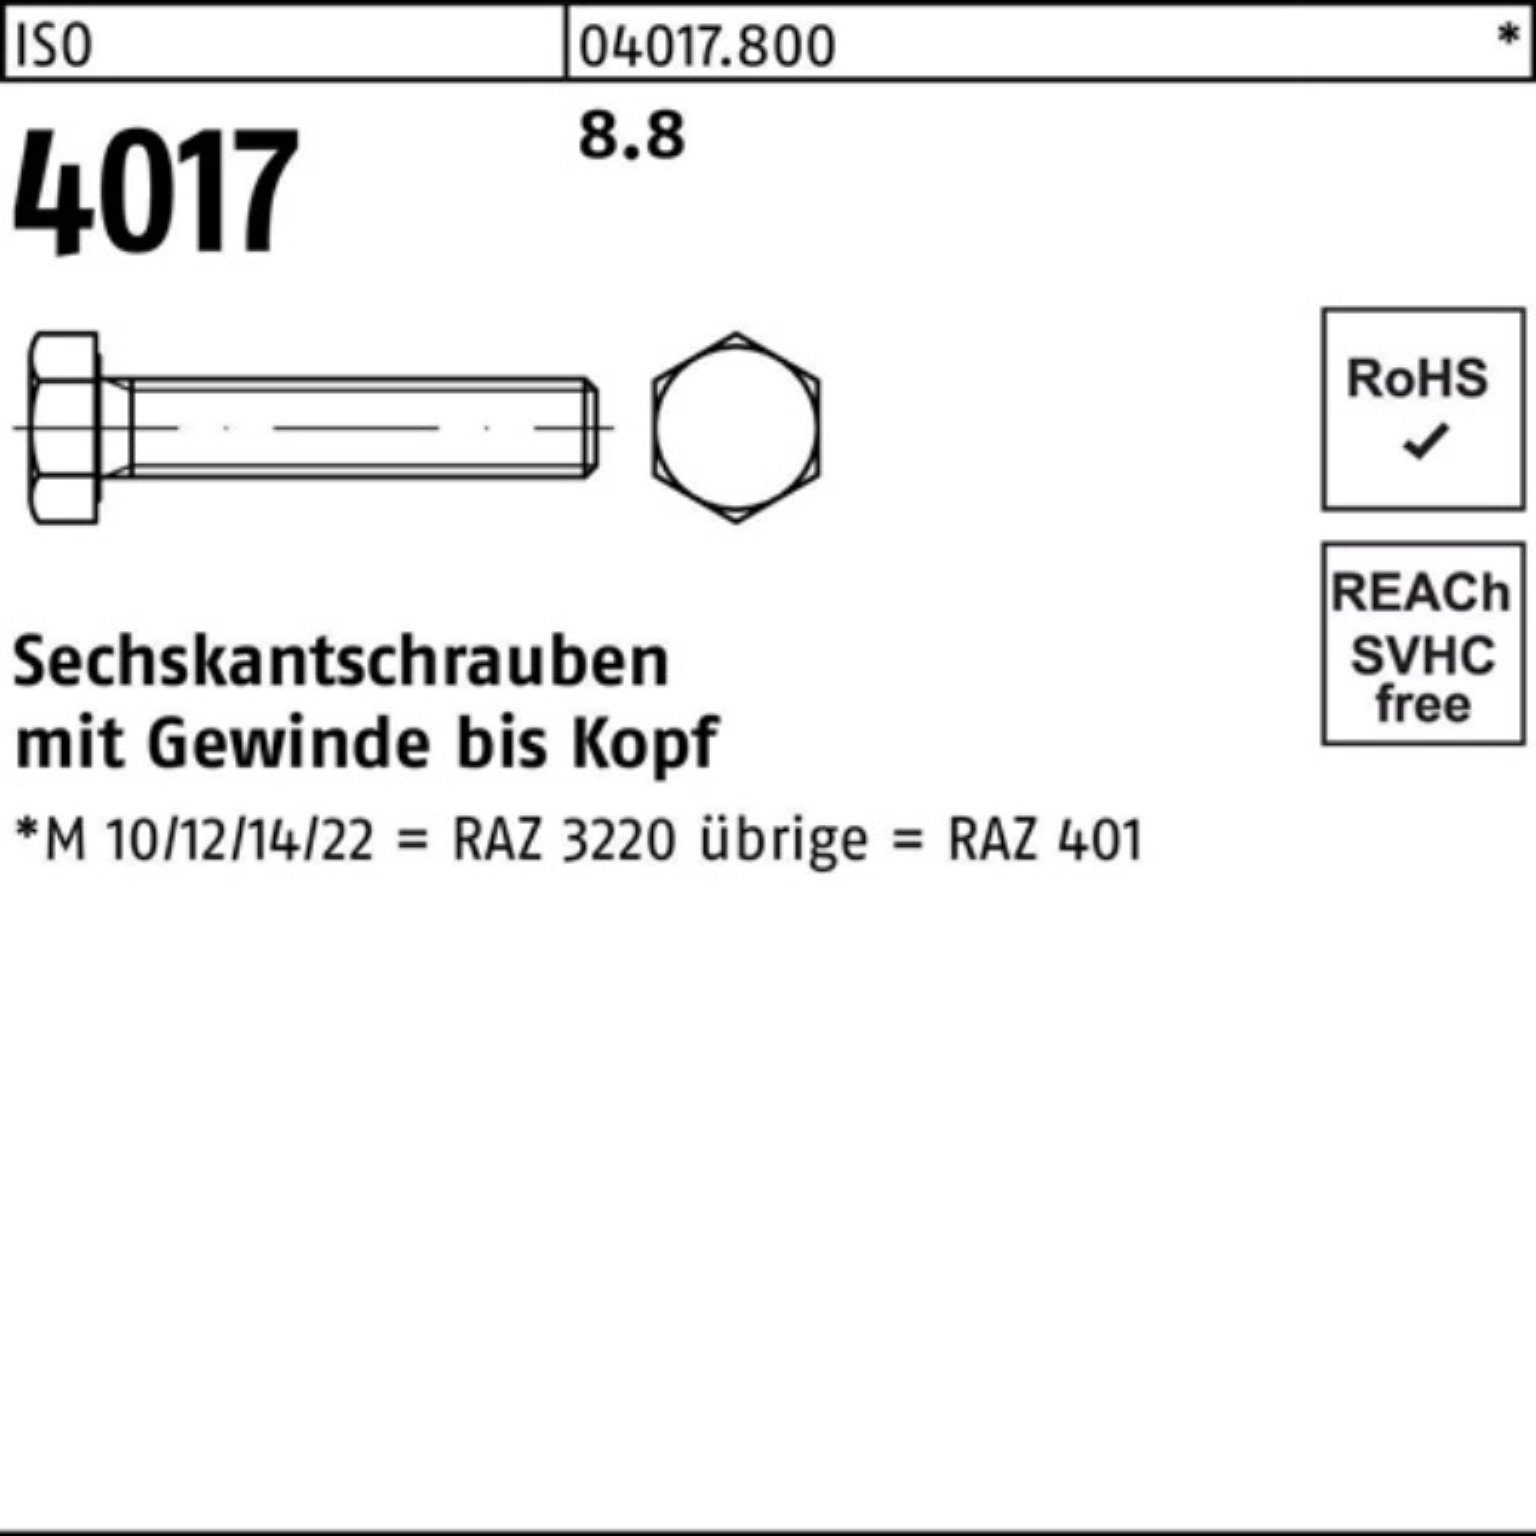 Bufab Sechskantschraube 100er M30x 1 4017 ISO ISO 320 Stück Sechskantschraube 401 VG 8.8 Pack